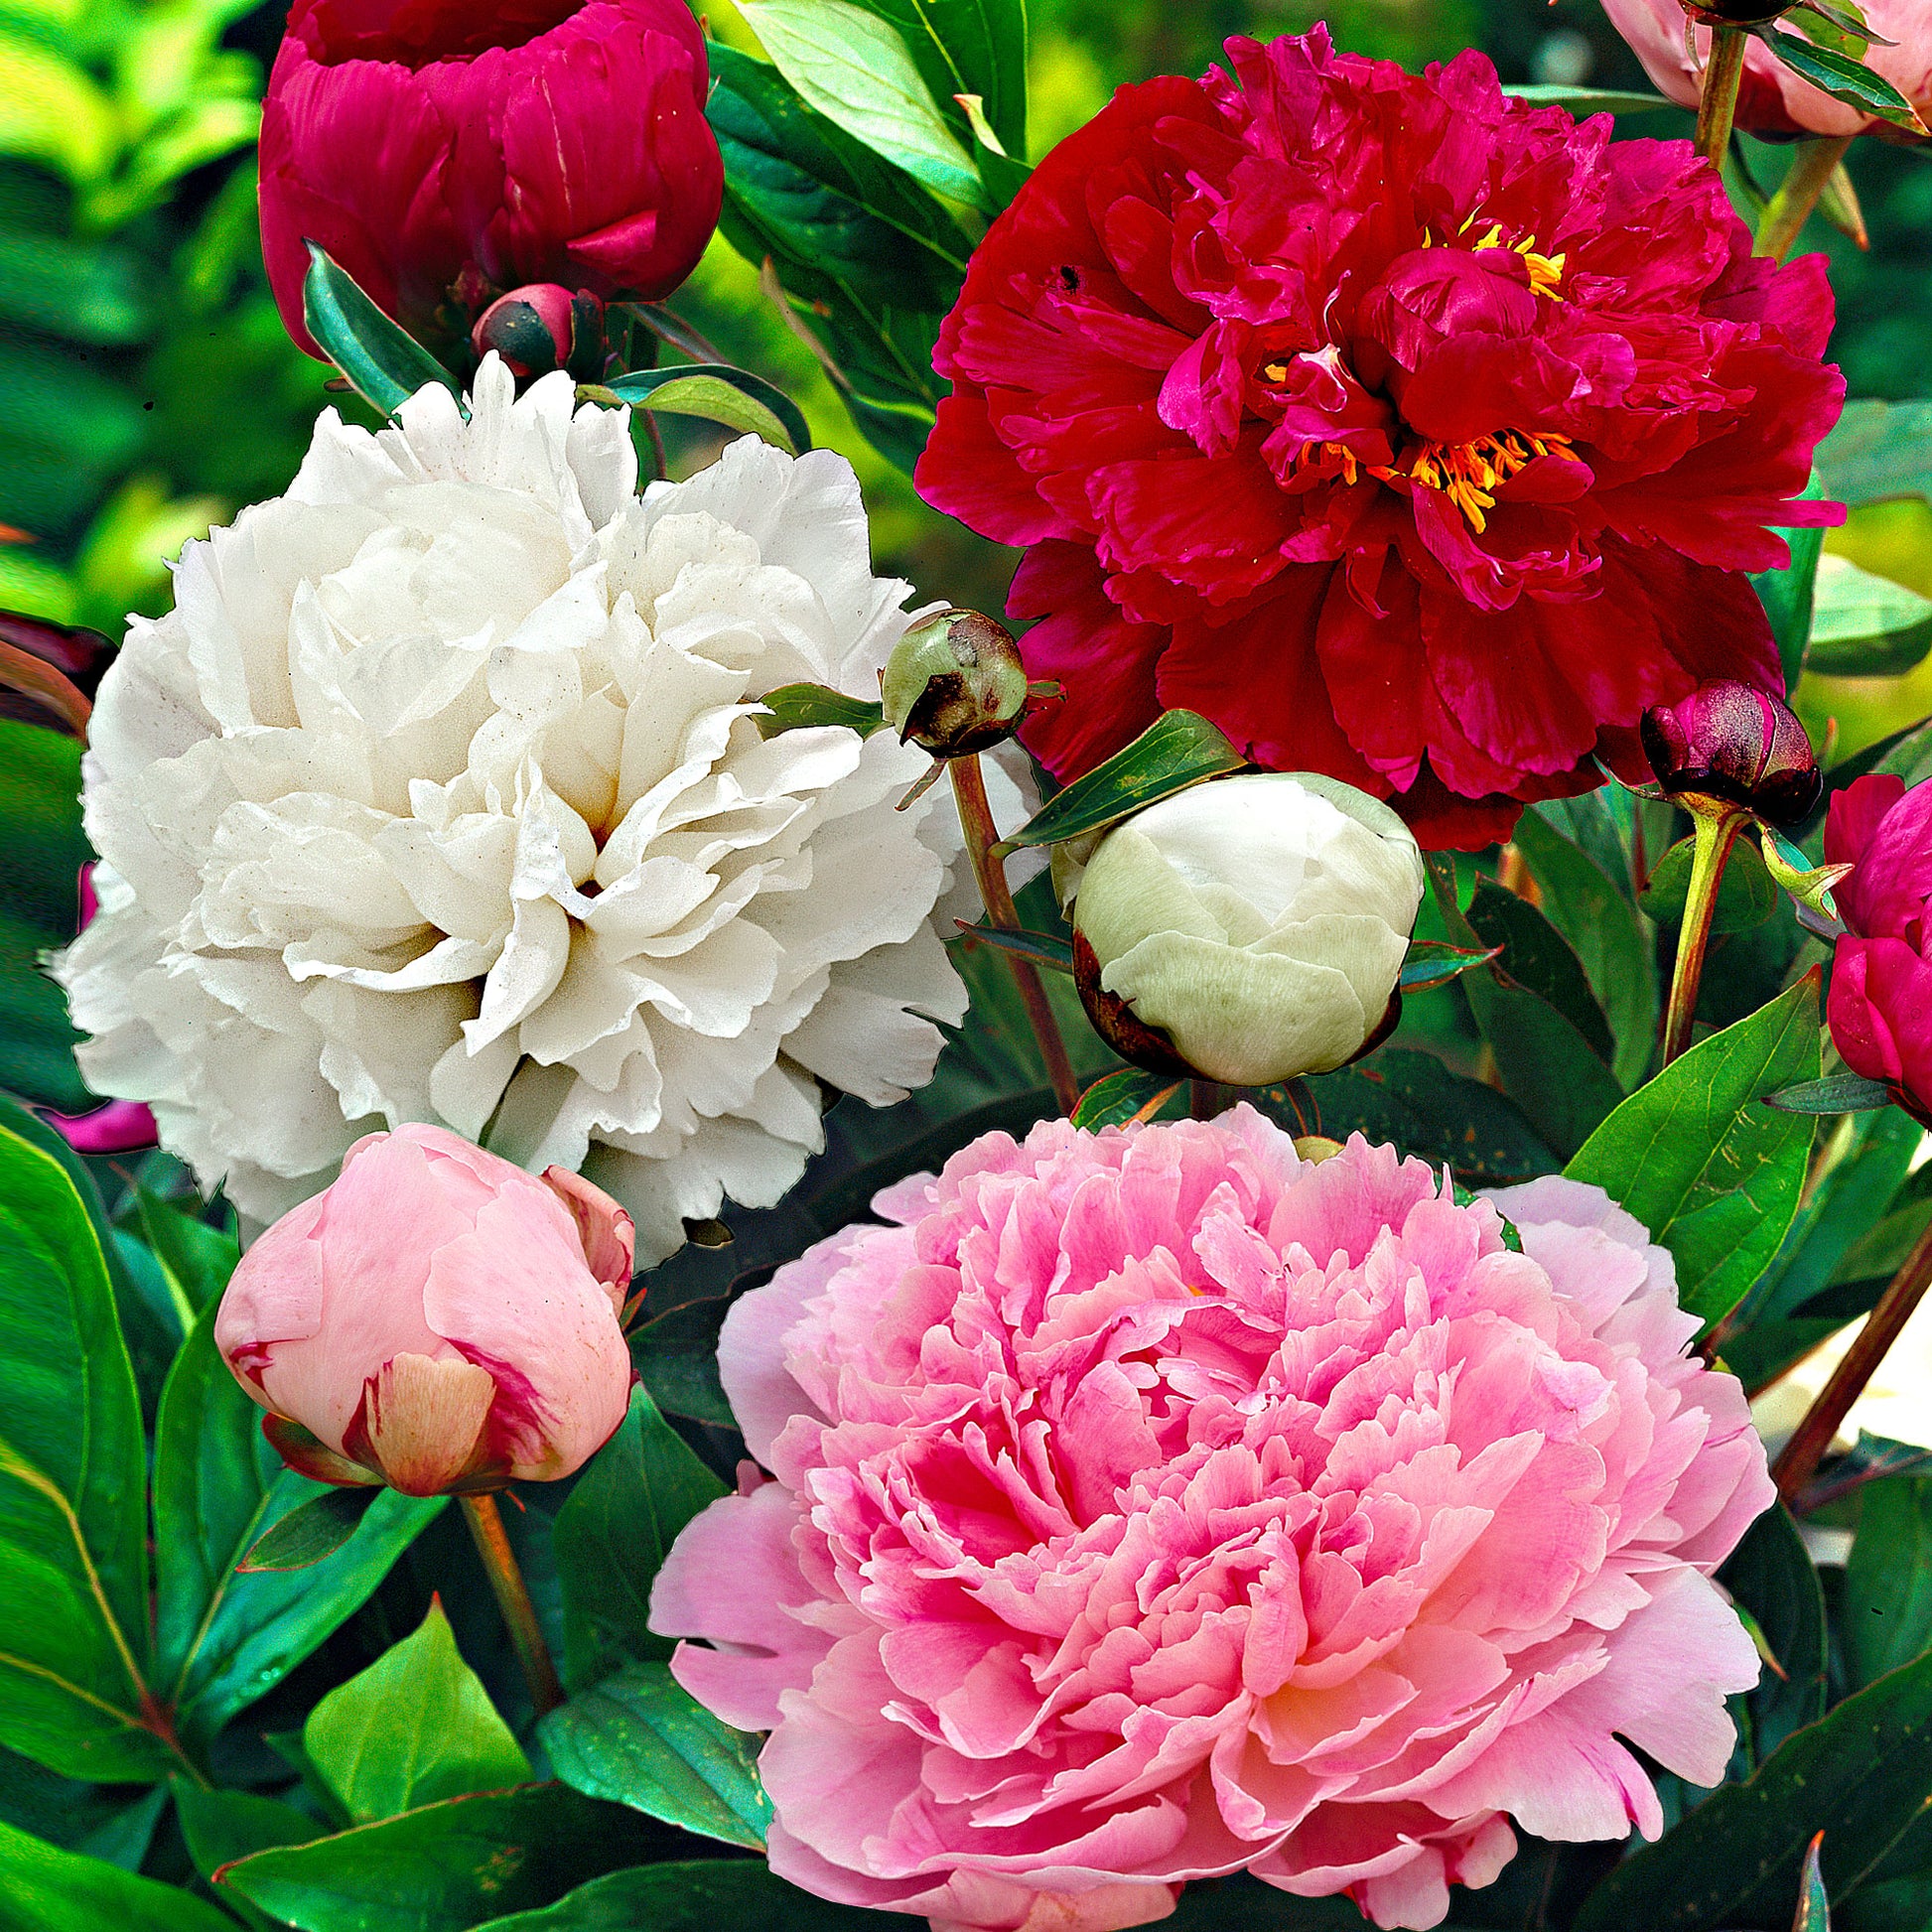 Achetez maintenant une plante vivace 3x Pivoine Paeonia rouge-rose-blanc -  Plants à racines nues | Bakker.com